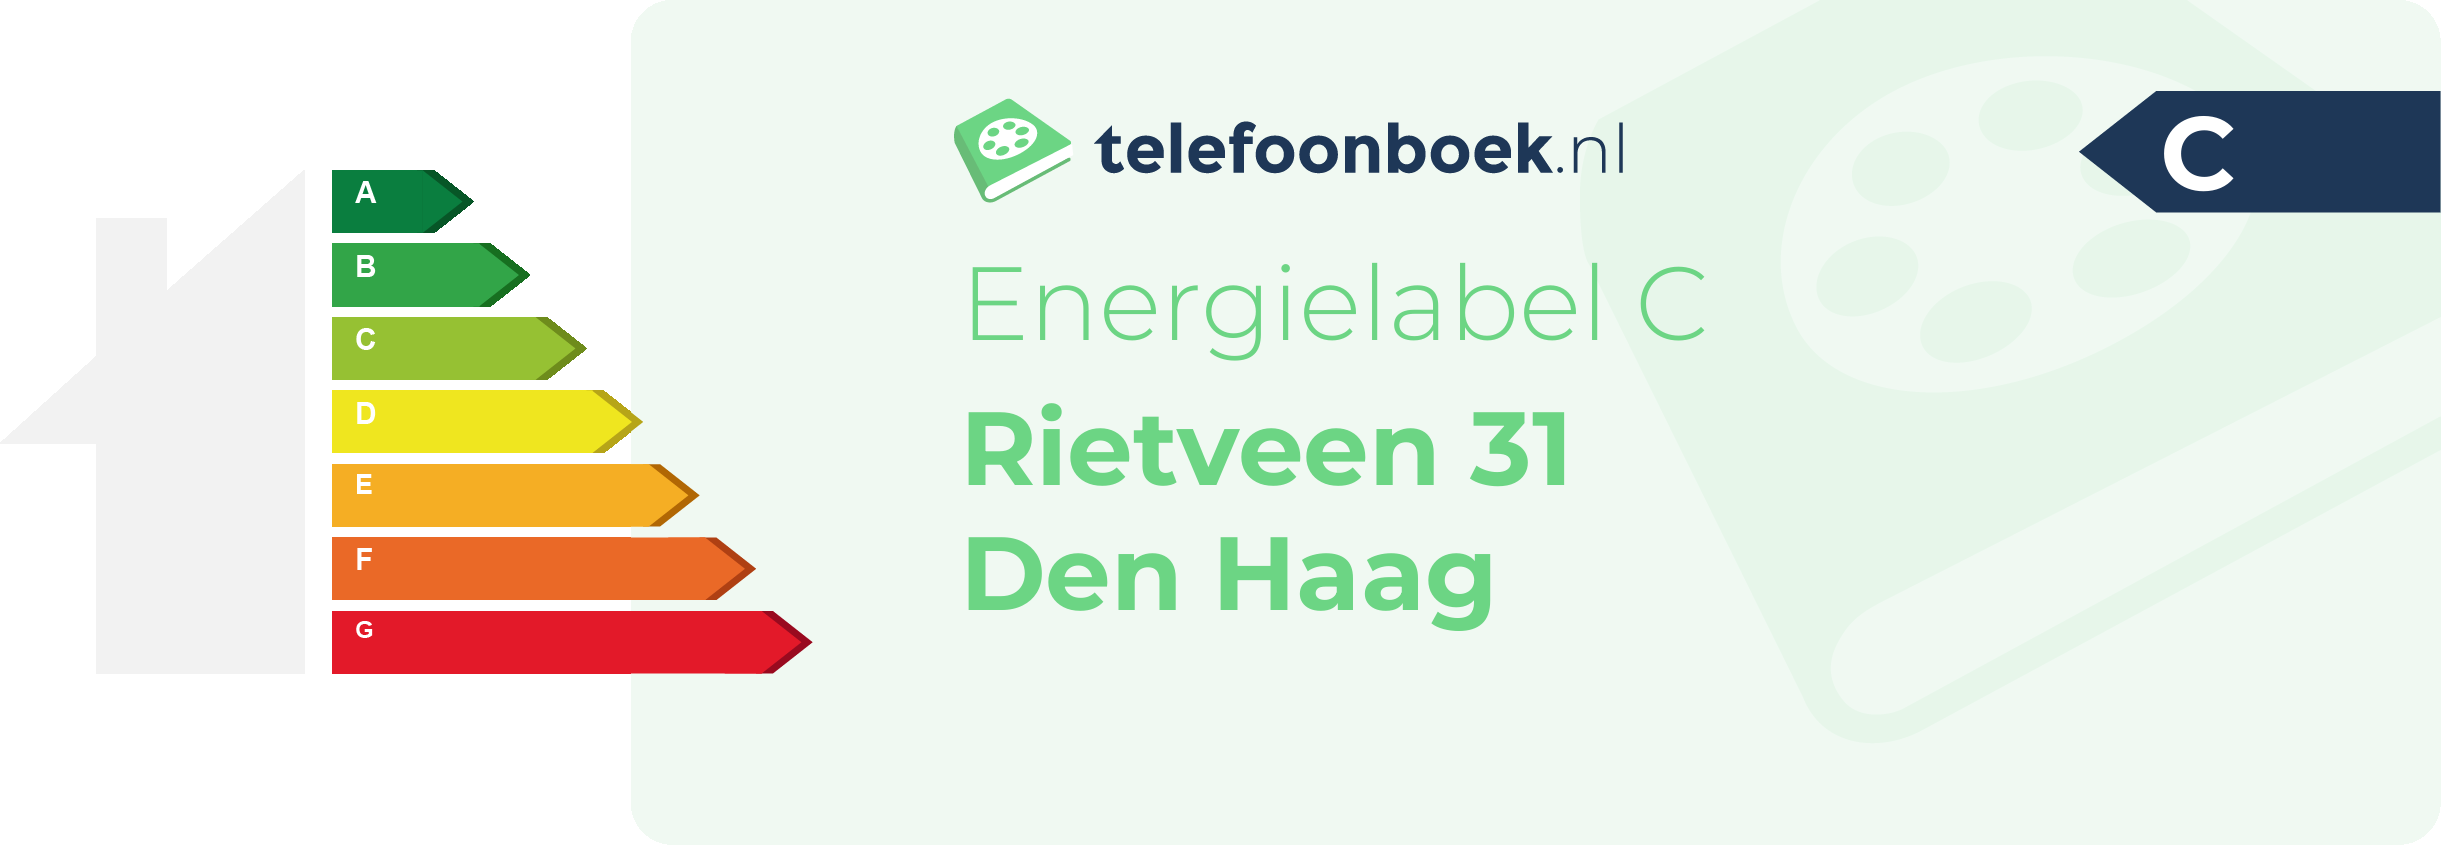 Energielabel Rietveen 31 Den Haag